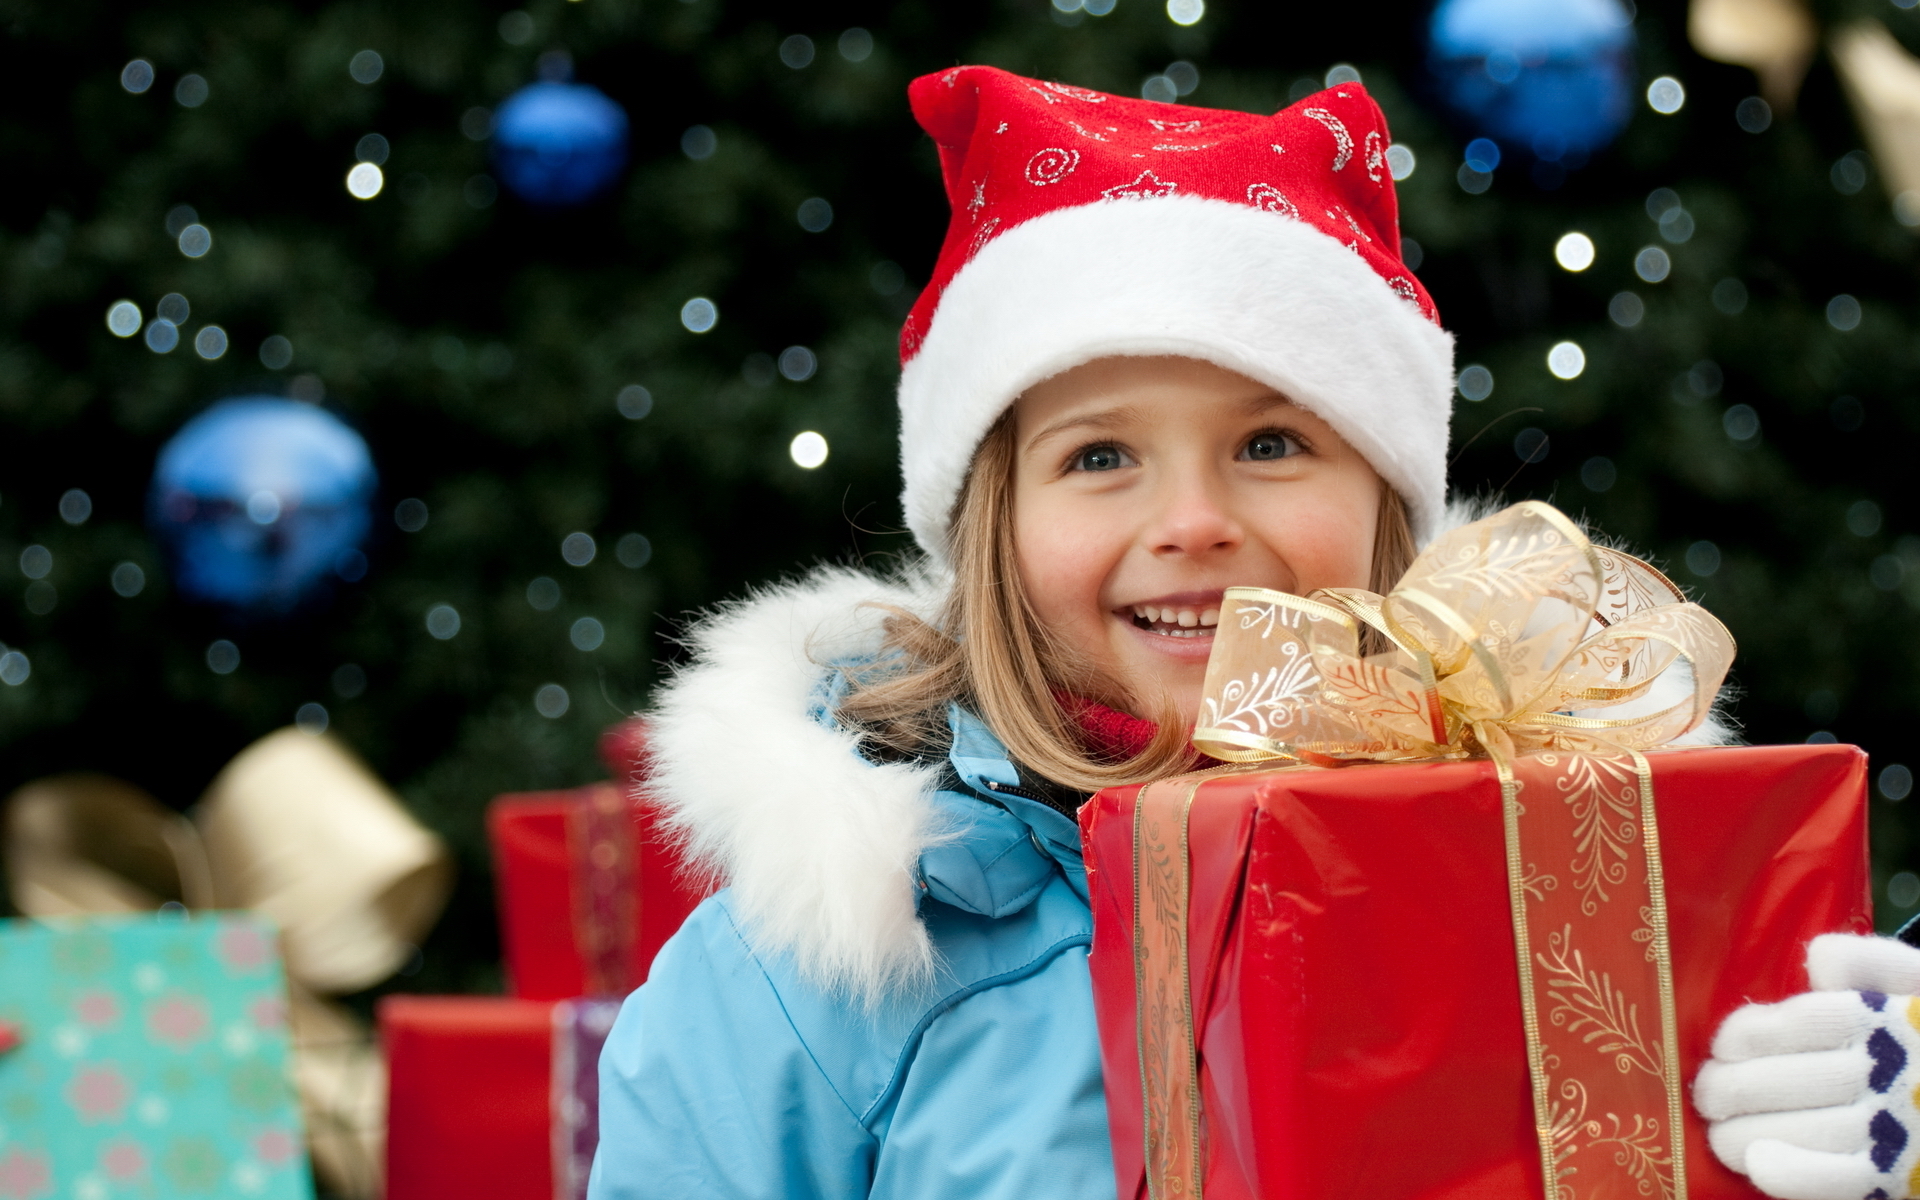 Скачать обои бесплатно Рождество, Ребёнок, Подарки, Праздничные картинка на рабочий стол ПК